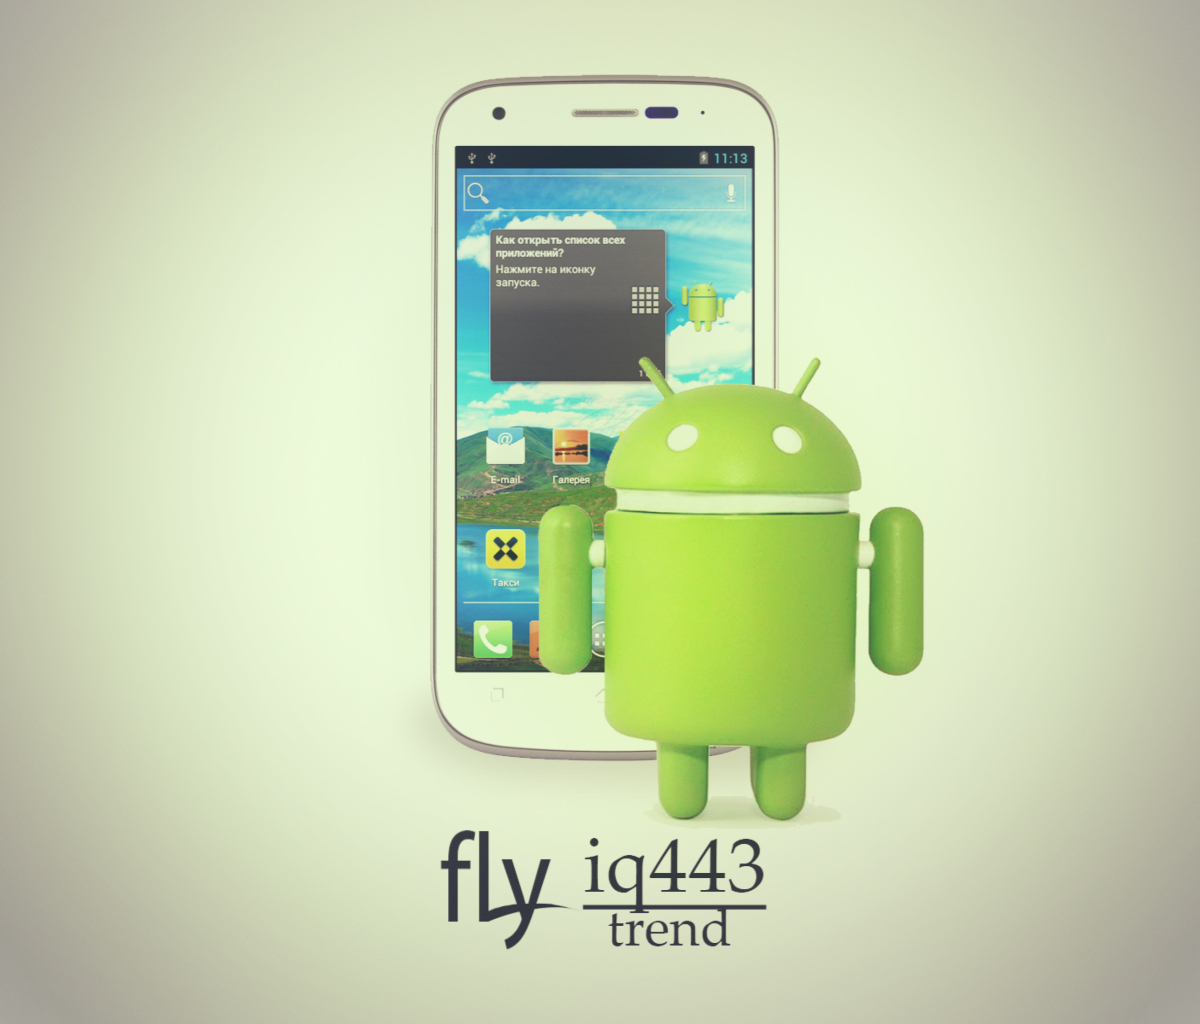 Fly Iq443 Trend Phone screenshot #1 1200x1024